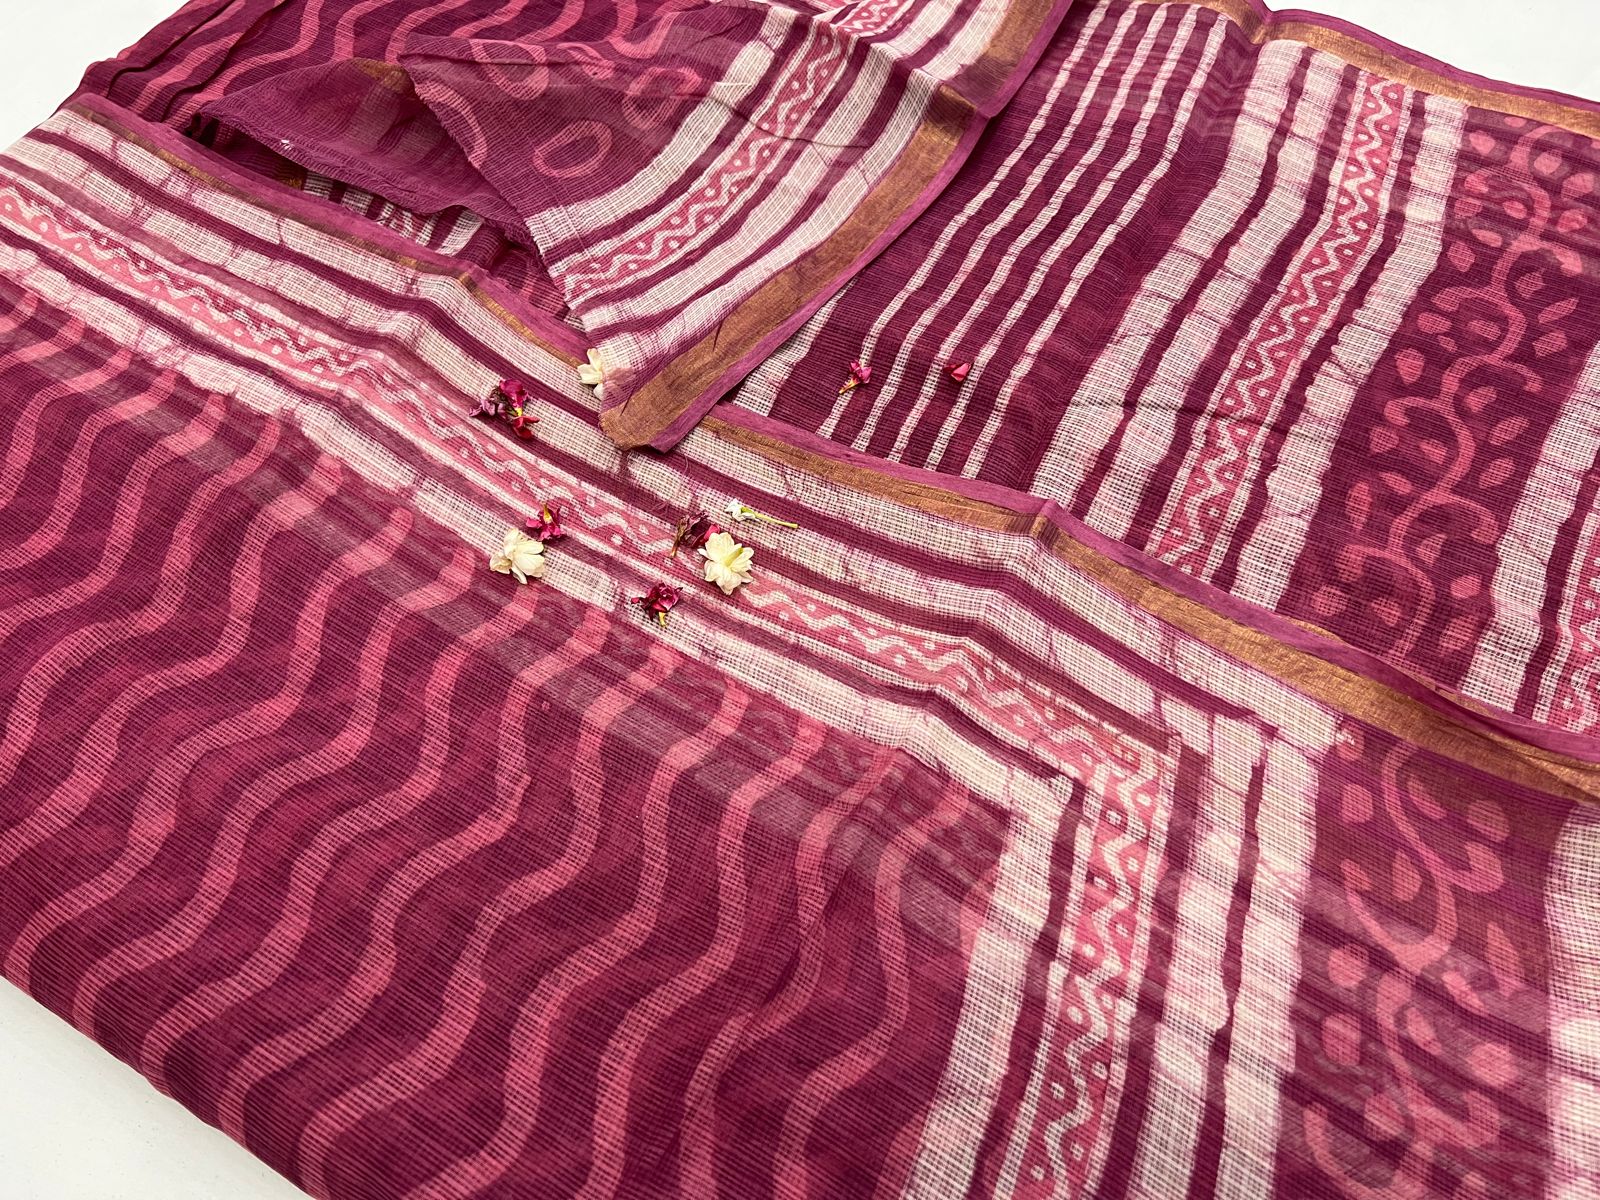 Blush and wine color hand block printed kota sarees